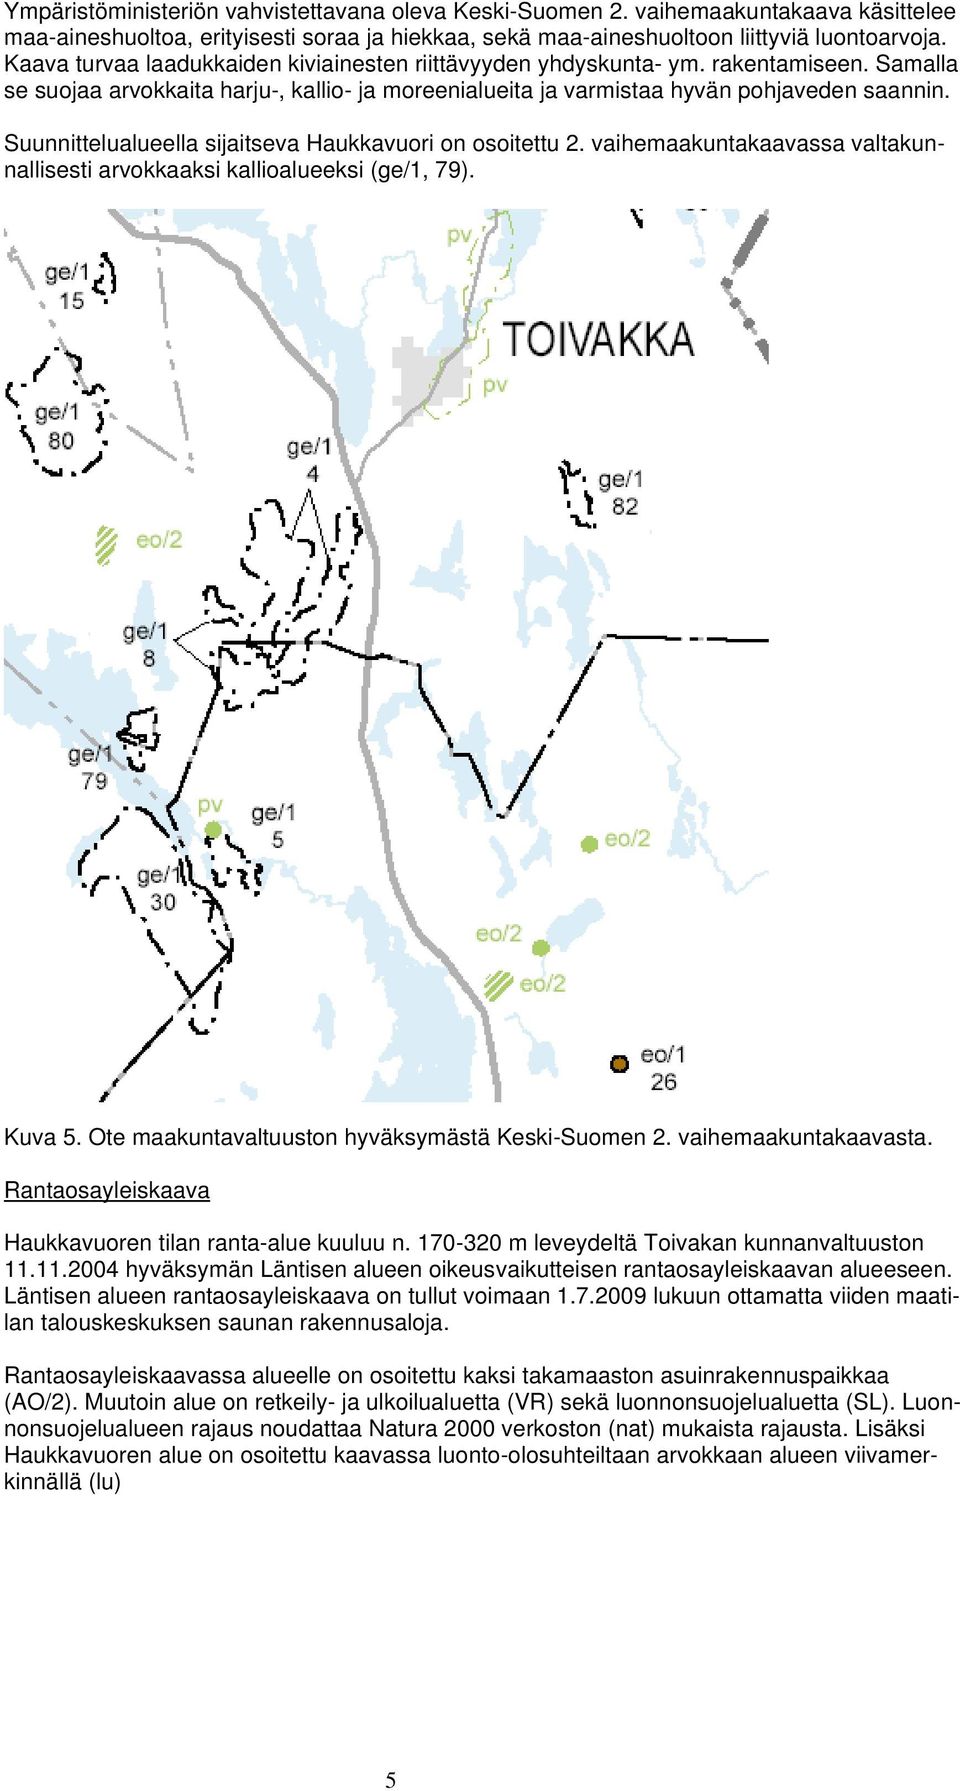 Suunnittelualueella sijaitseva Haukkavuori on osoitettu 2. vaihemaakuntakaavassa valtakunnallisesti arvokkaaksi kallioalueeksi (ge/1, 79). Kuva 5. Ote maakuntavaltuuston hyväksymästä Keski-Suomen 2.